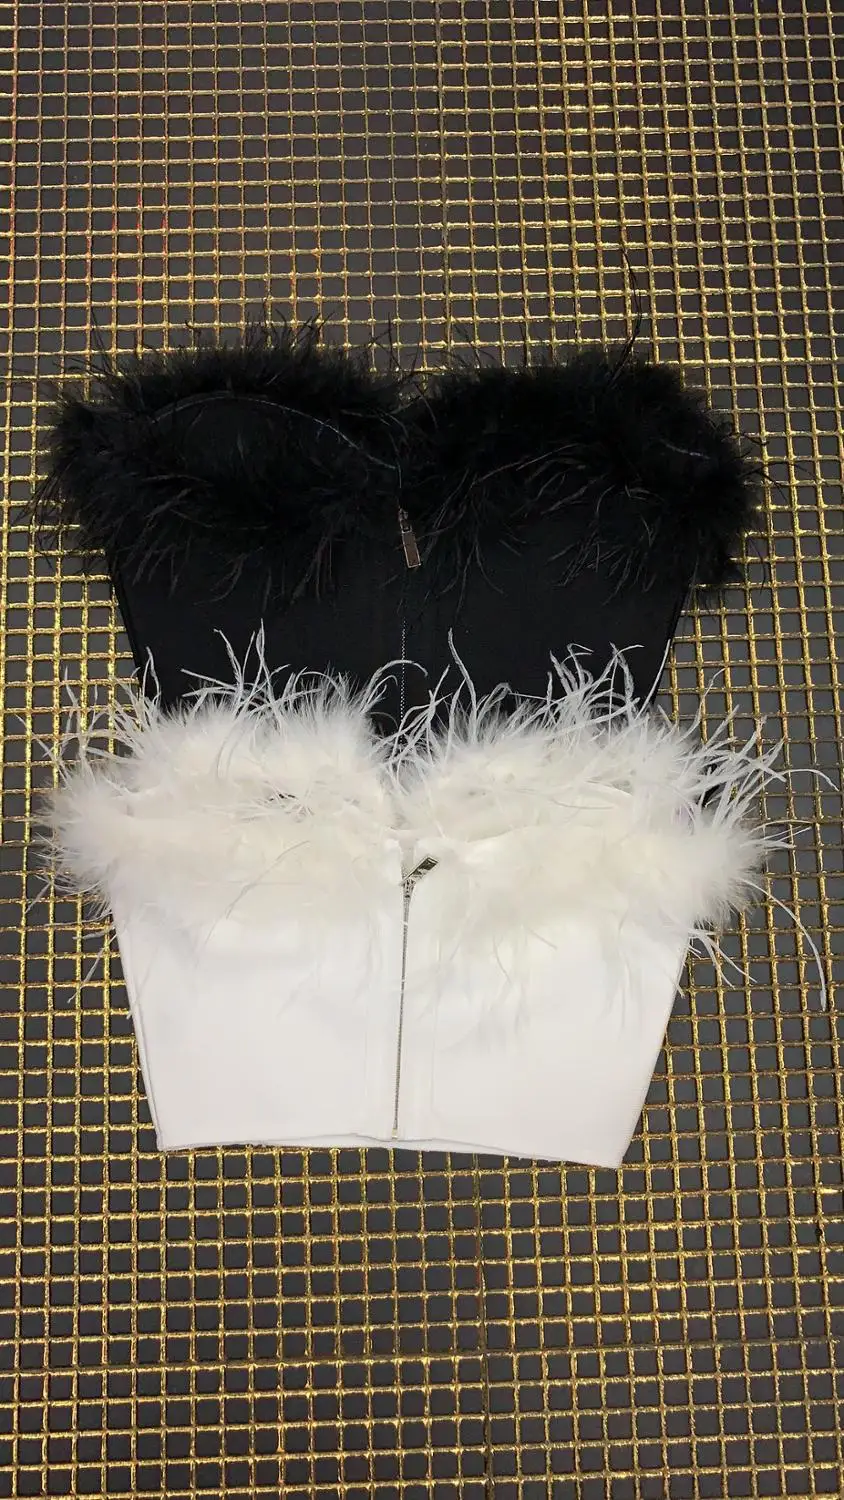 Новое поступление, белый и черный укороченный топ с перьями, весенне-летний наряд, сексуальный мини-топ, винтажные платья от AliExpress RU&CIS NEW